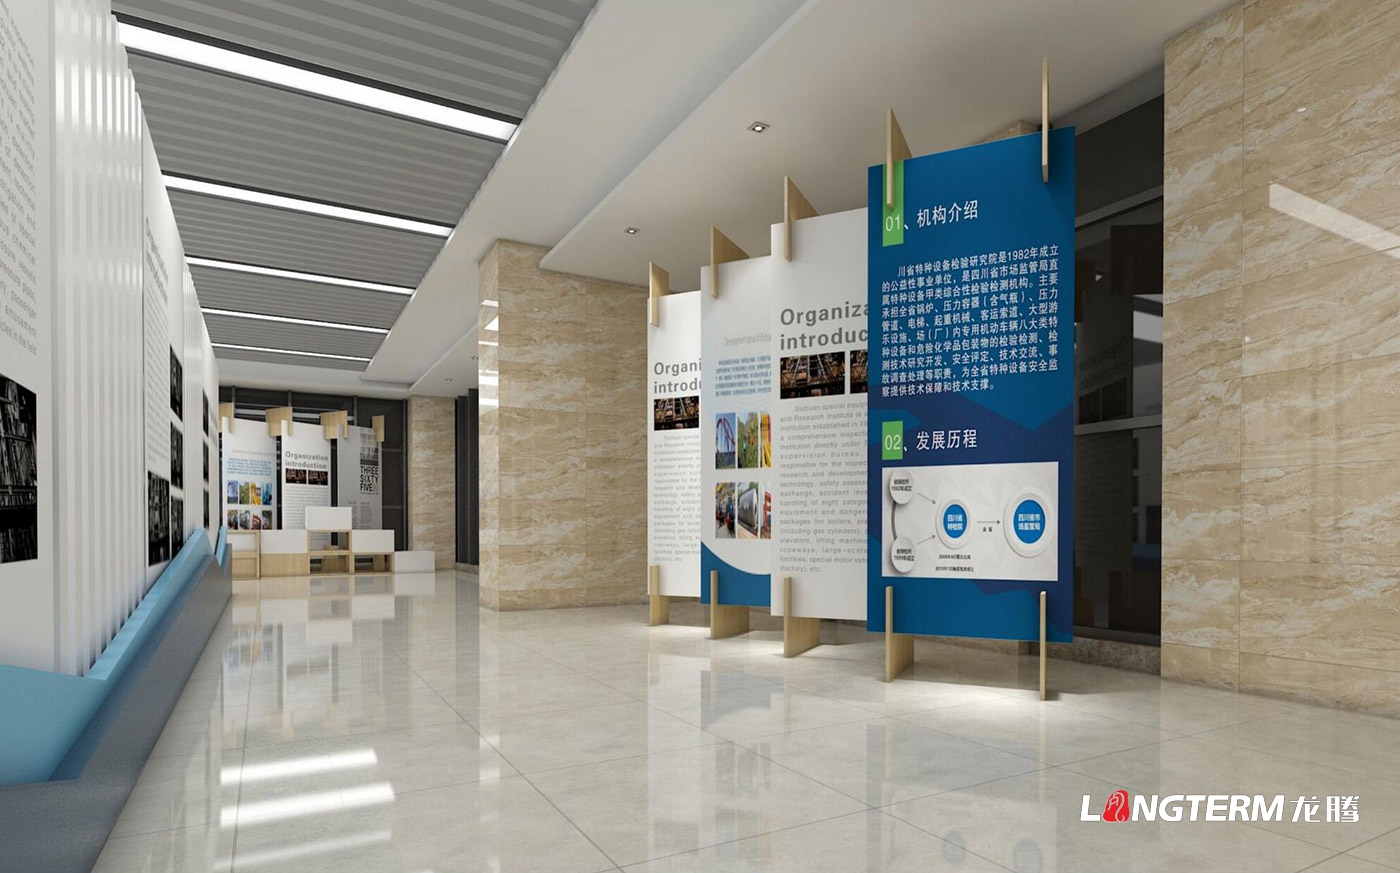 四川省特种设备检验研究院科技结果展览室、特种设备科普展示厅、临展区策划及文化墙建设设计